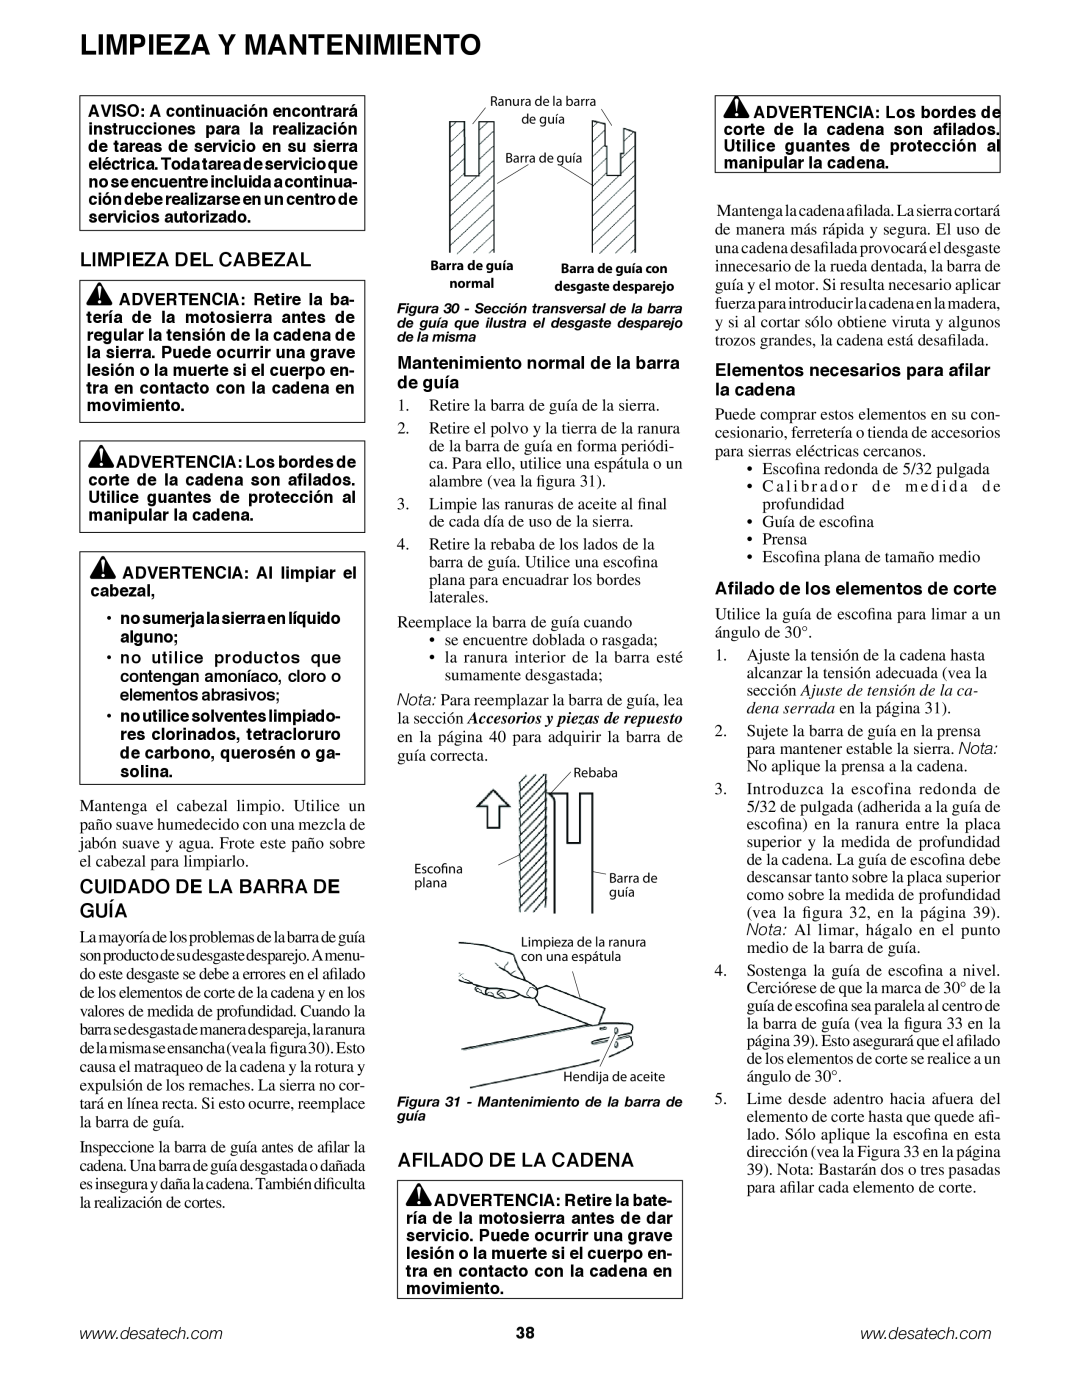 Remington Power Tools BPS188A, BS188A owner manual Limpieza Del Cabezal, Cuidado De La Barra De Guía, Afilado De La Cadena 